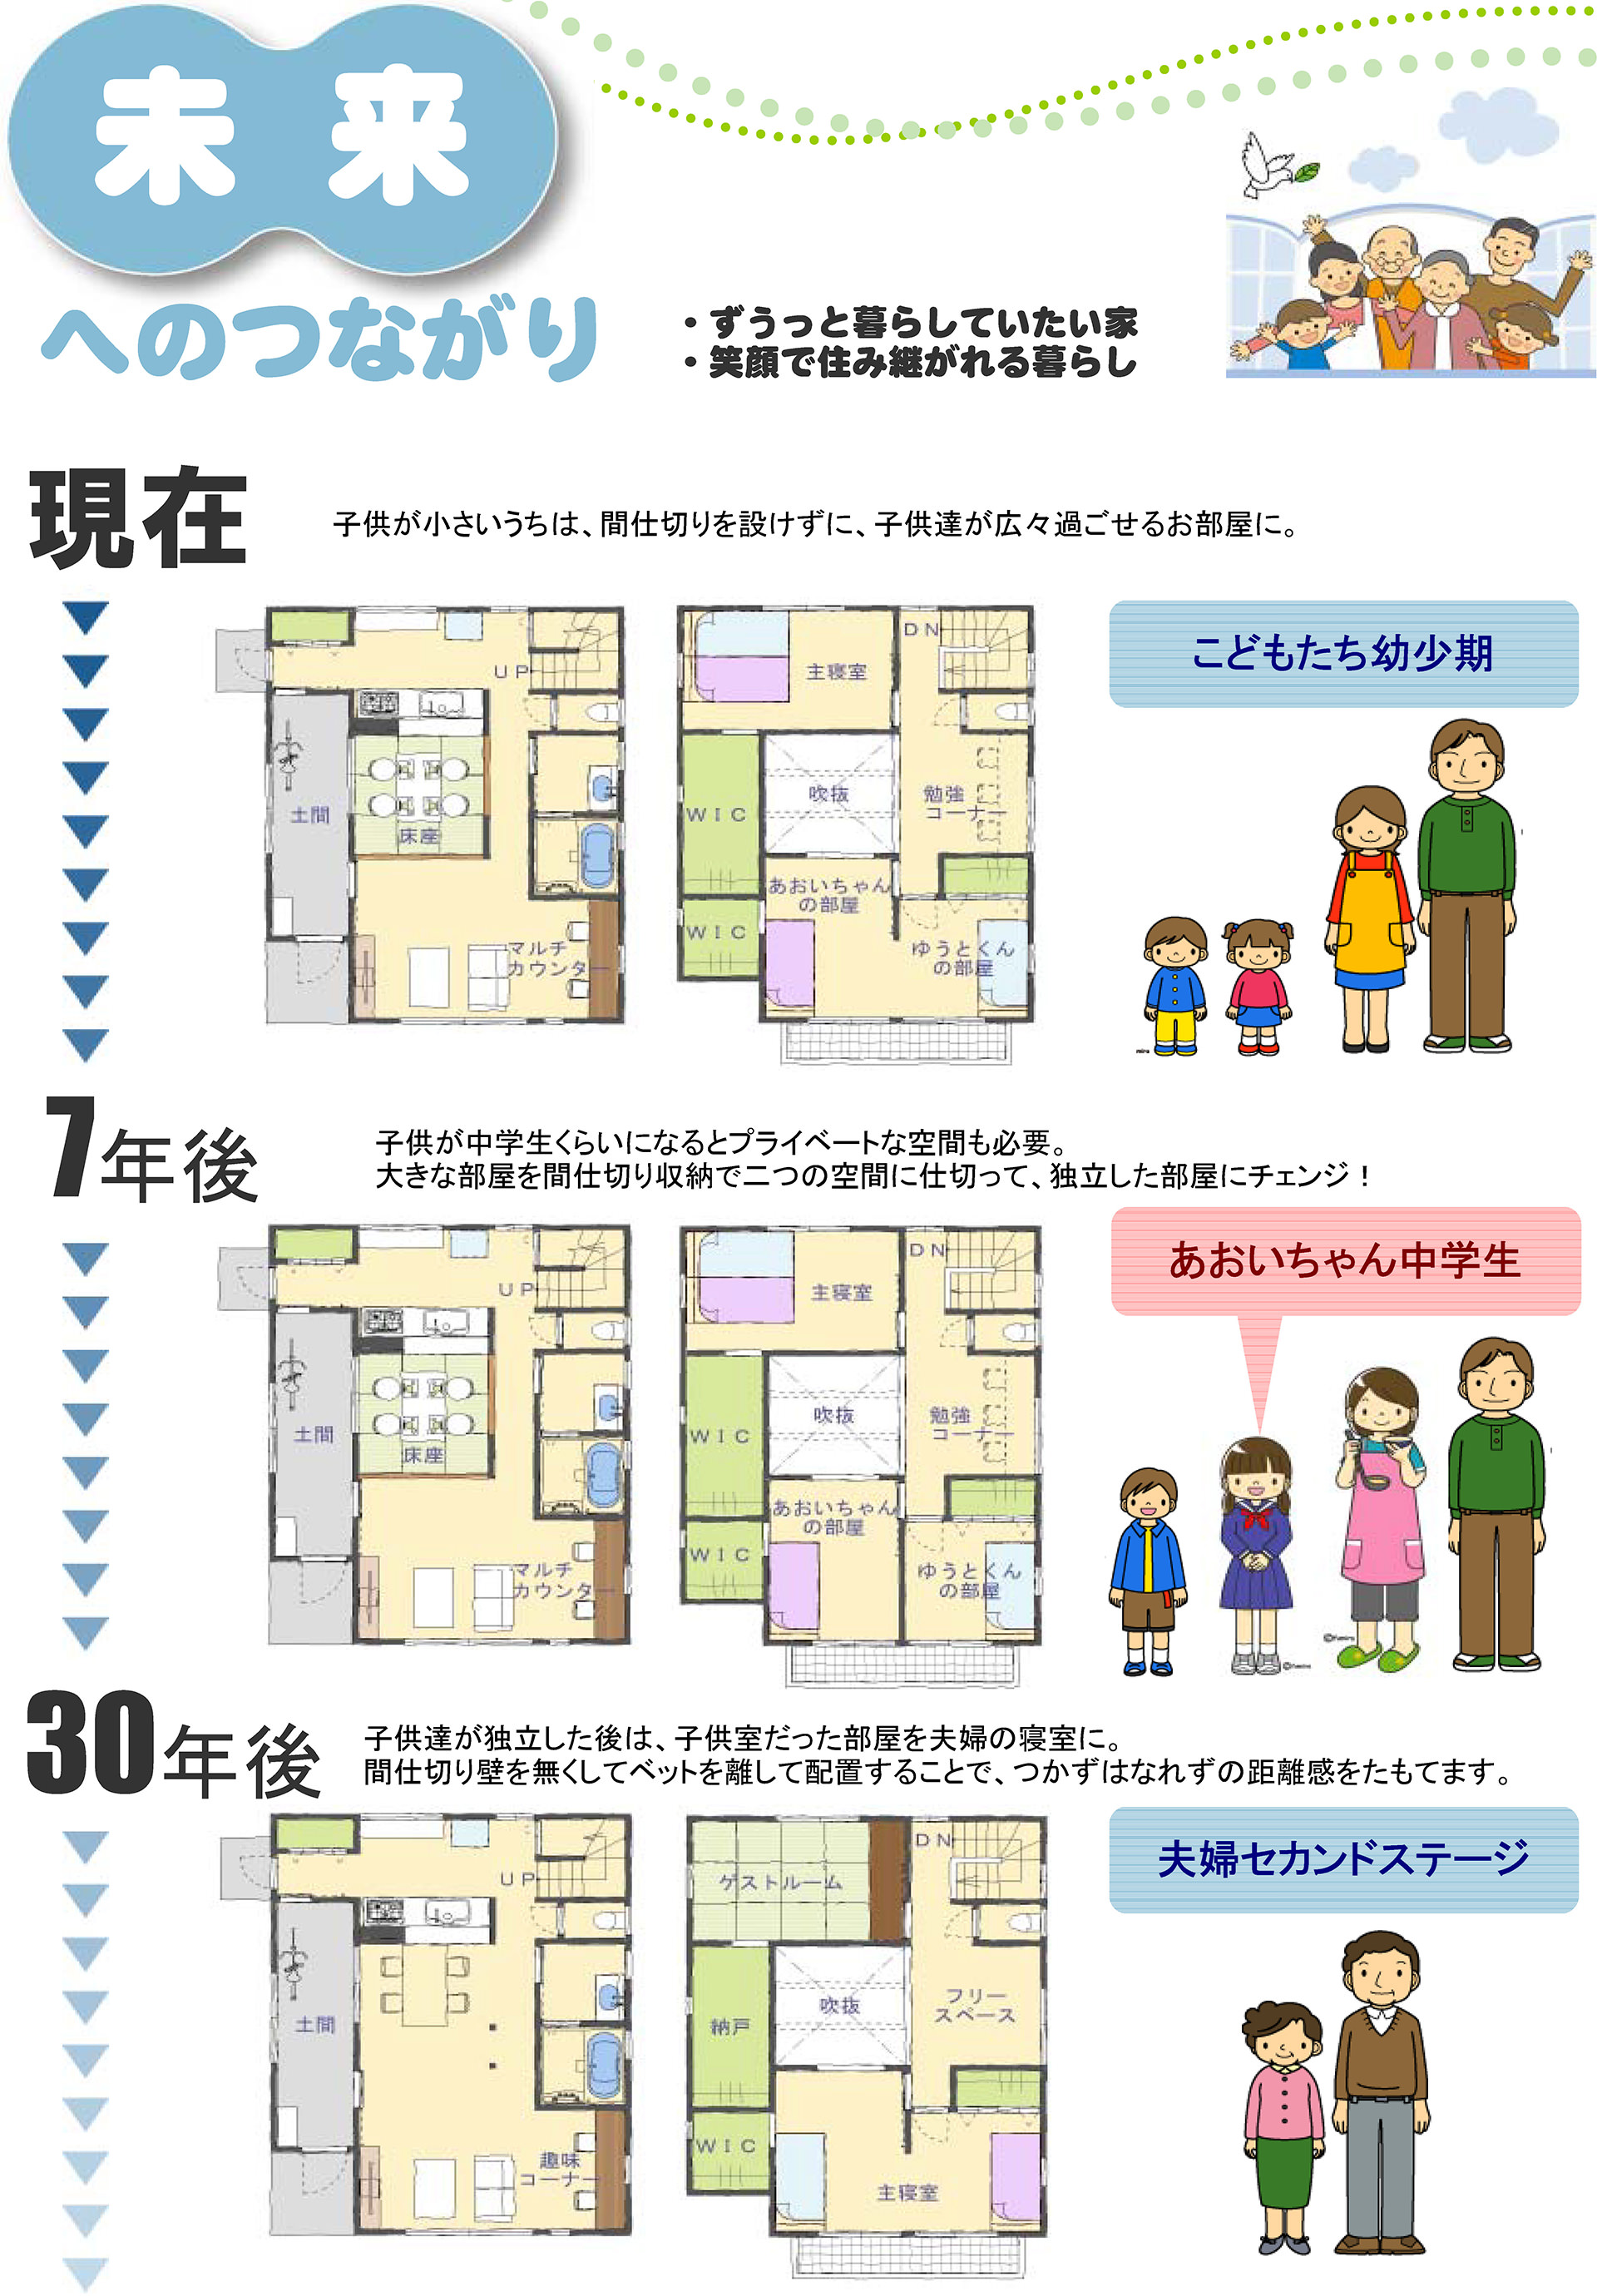 未来へのつながり-床座のある家 現在：子供が小さいうちは、間仕切りを設けずに、子供たちが広々過ごせるお部屋に。7年後：子供が中学生くらいになるとプライベートな空間も必要。大きな部屋を間仕切り収納で2つの空間に仕切って、独立した部屋にチェンジ！30年後：子供たちが独立した後は、子供部屋だった部屋を夫婦の寝室に。間仕切り壁をなくしてベッドを離して配置することで、つかずはなれずの距離感を保てます。